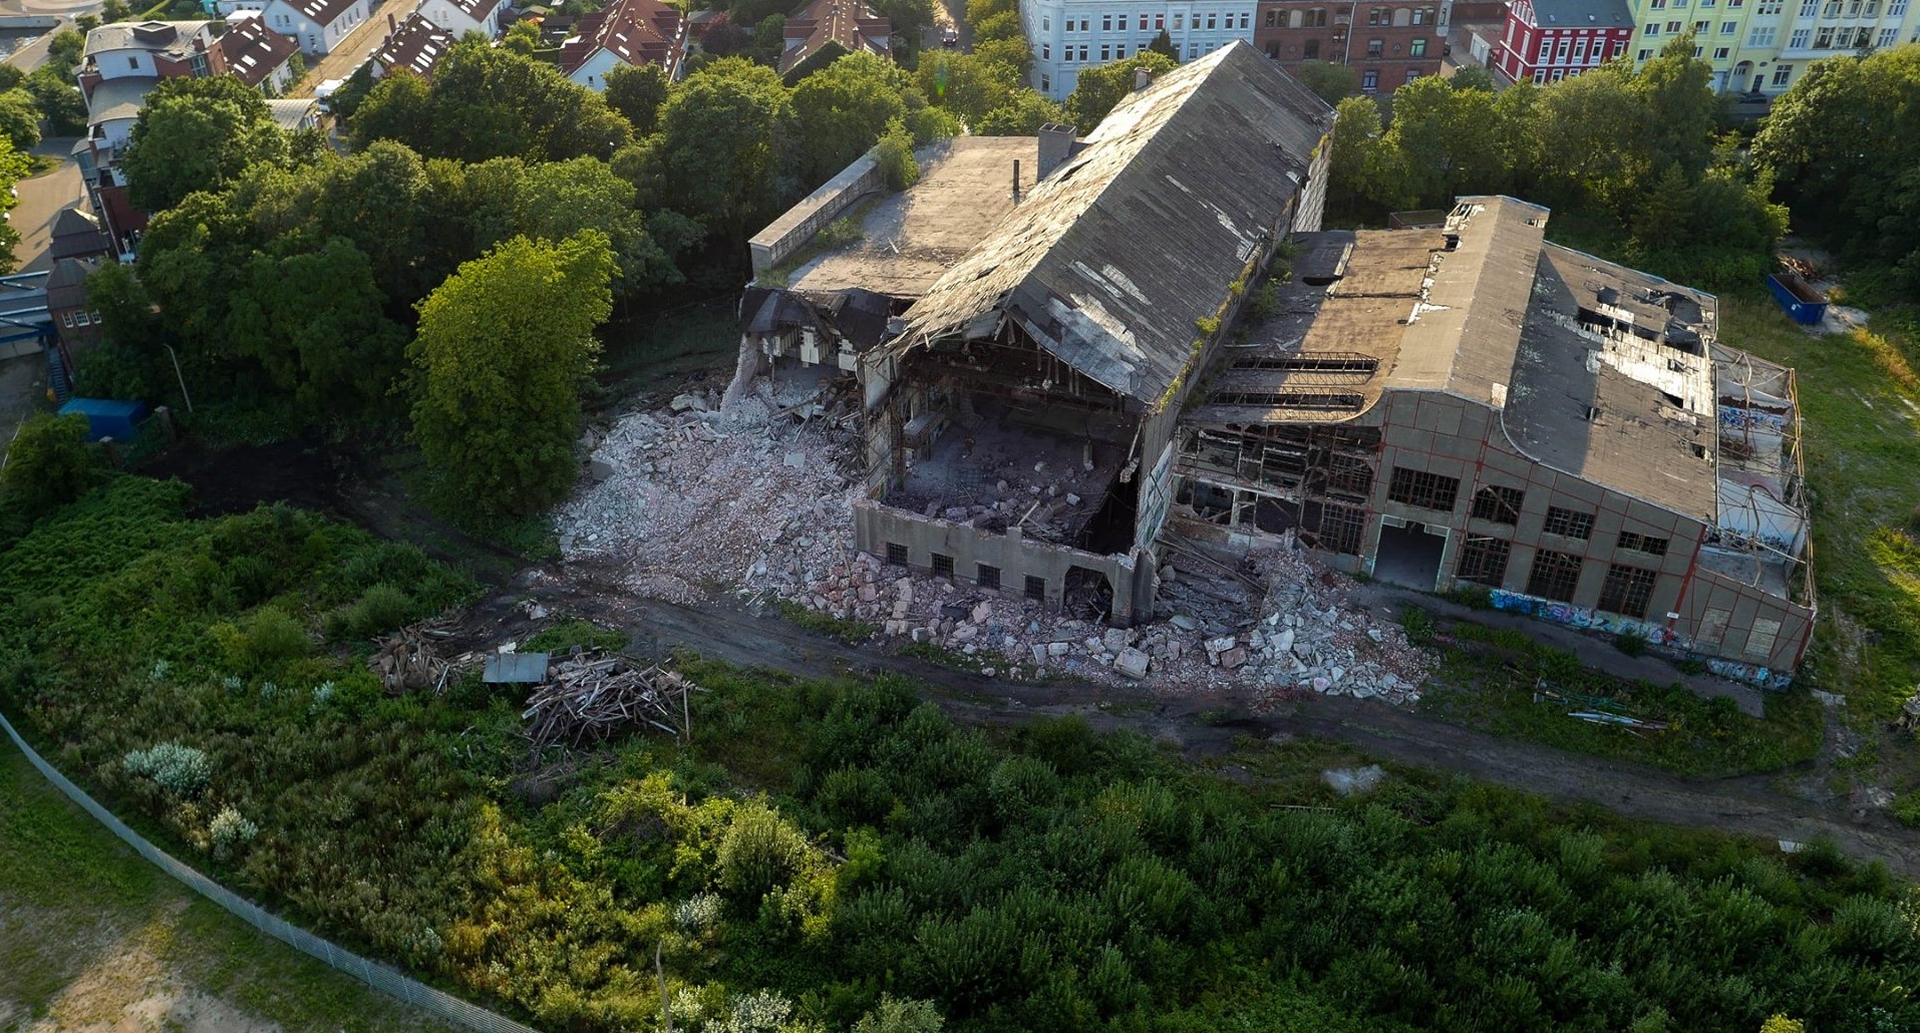 Ergebnis jahrzehntelangen gezielten Verfalls: Die denkmalgeschützte Südzentrale in Wilhelmshaven wird abgerissen (Bild: Oliver Graw)